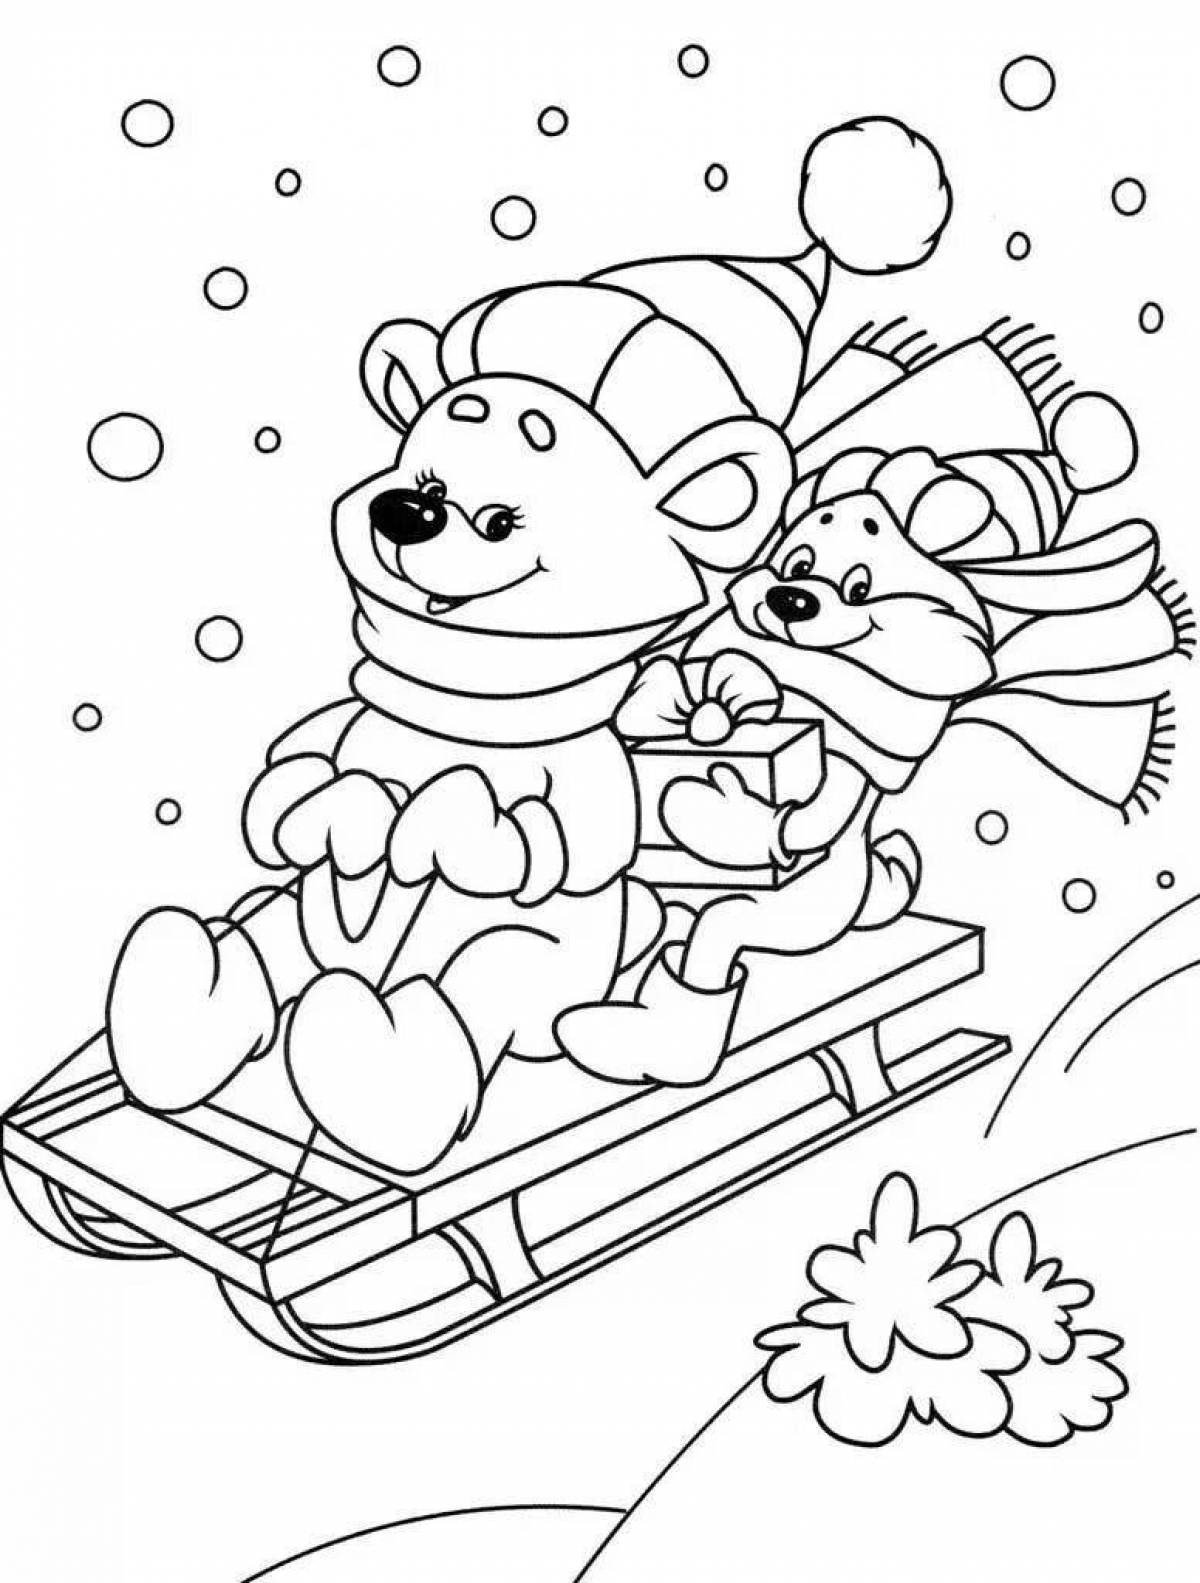 Праздничная раскраска зима для детей 4 лет